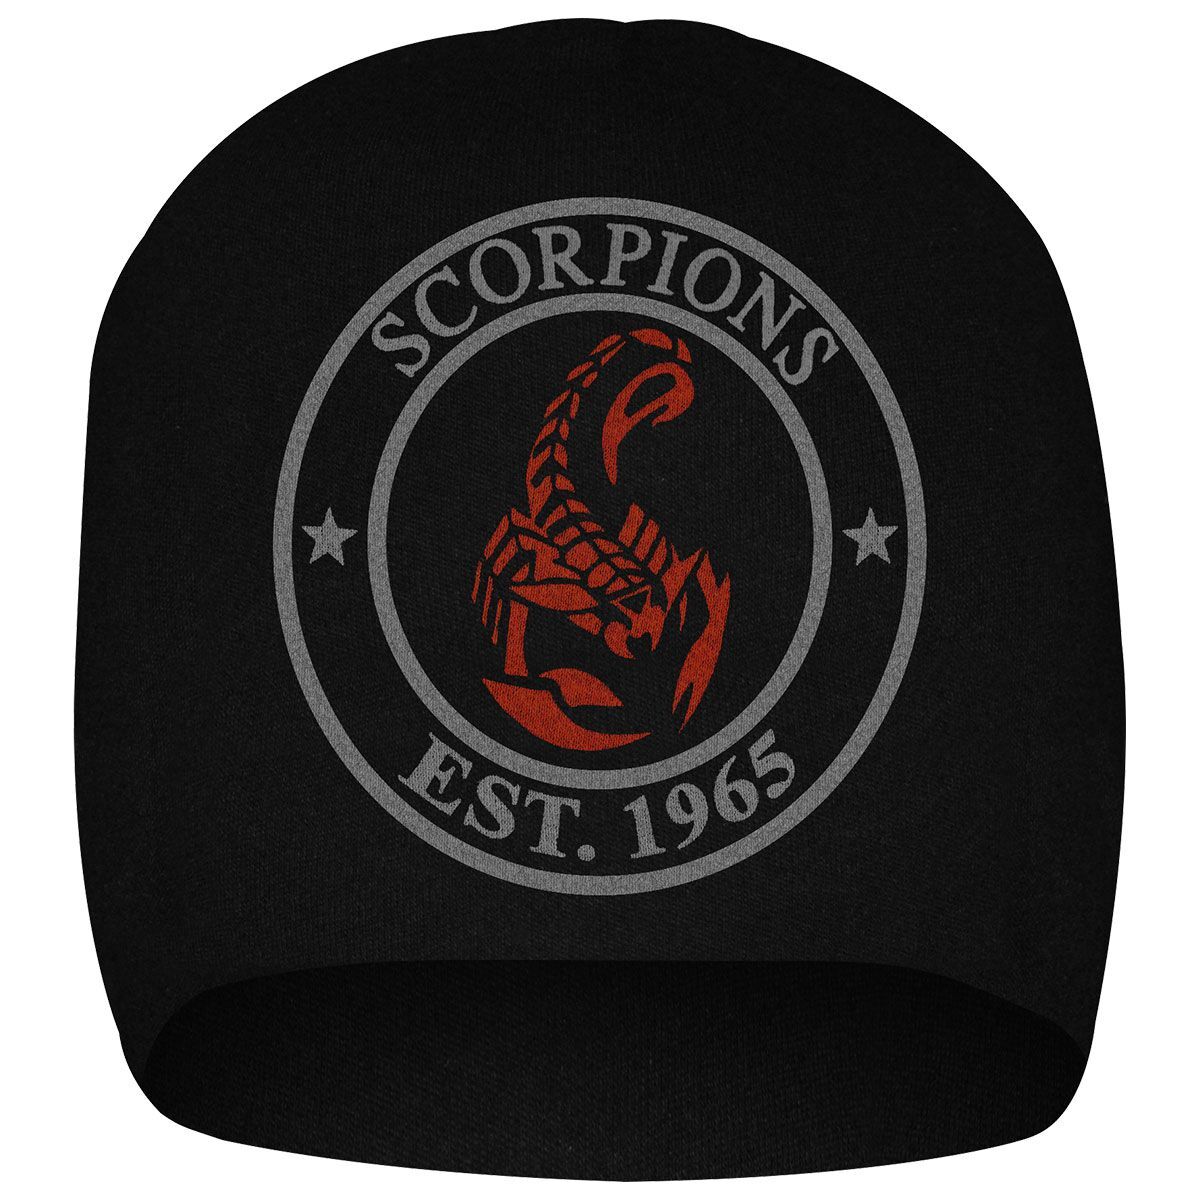 bonnet rock à gogo scorpions - 1965